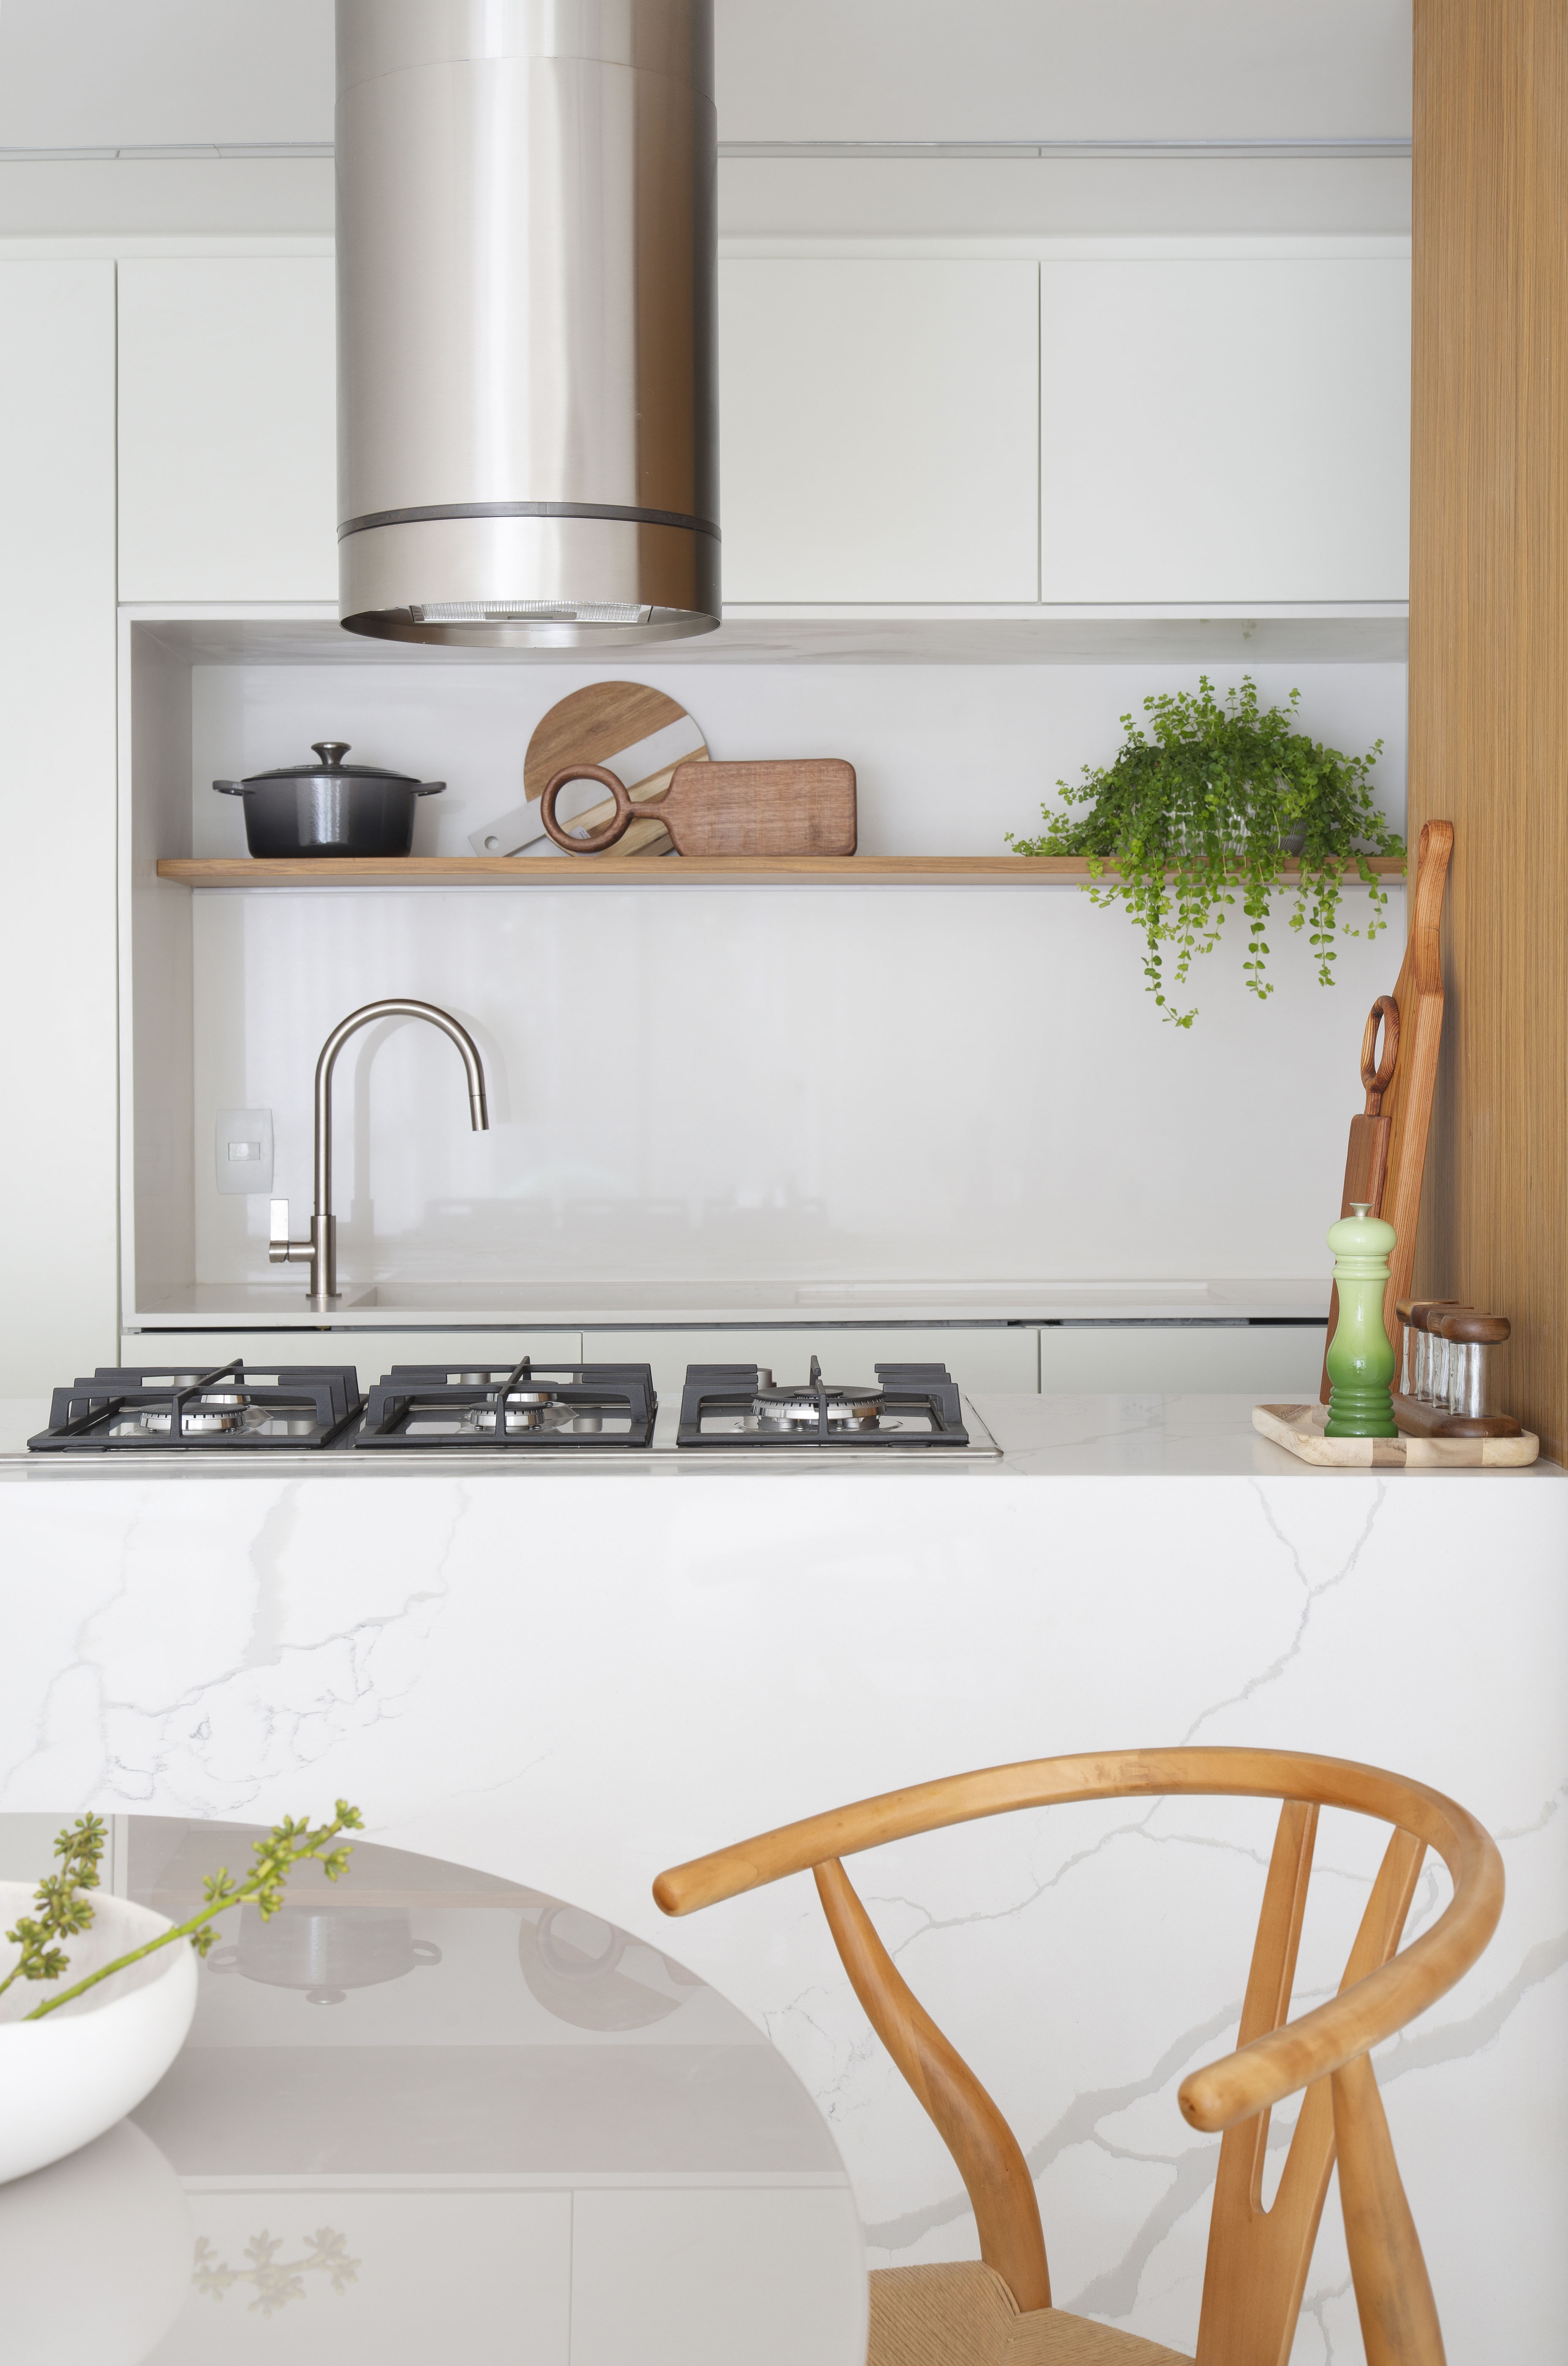 Cozinha integrada branca com ilha com revestimento marmorizado e coifa;